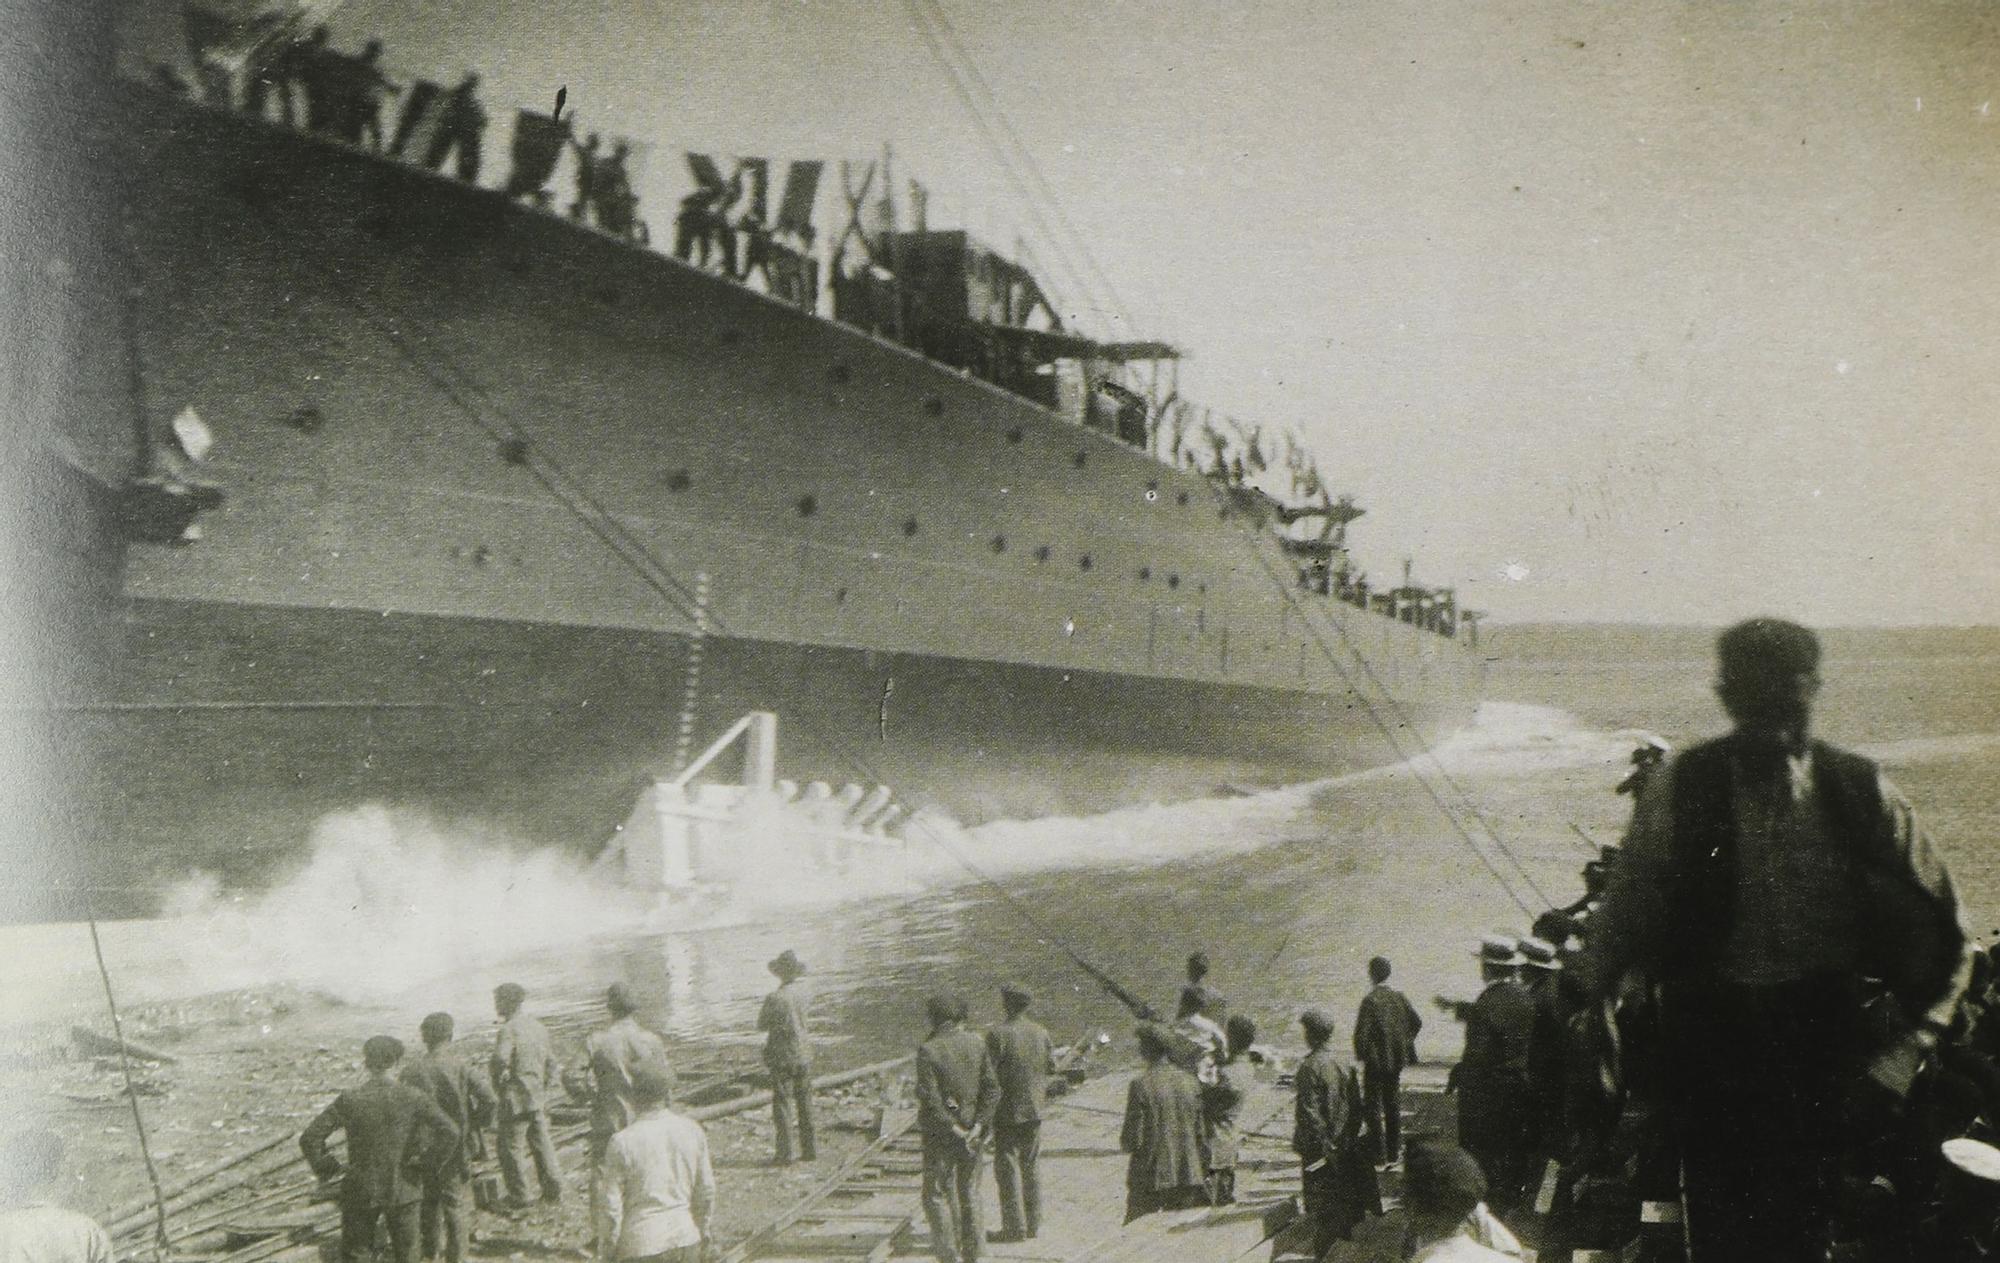 Una travesía fotográfica al pasado de la Marina española de casi cien años de navegación